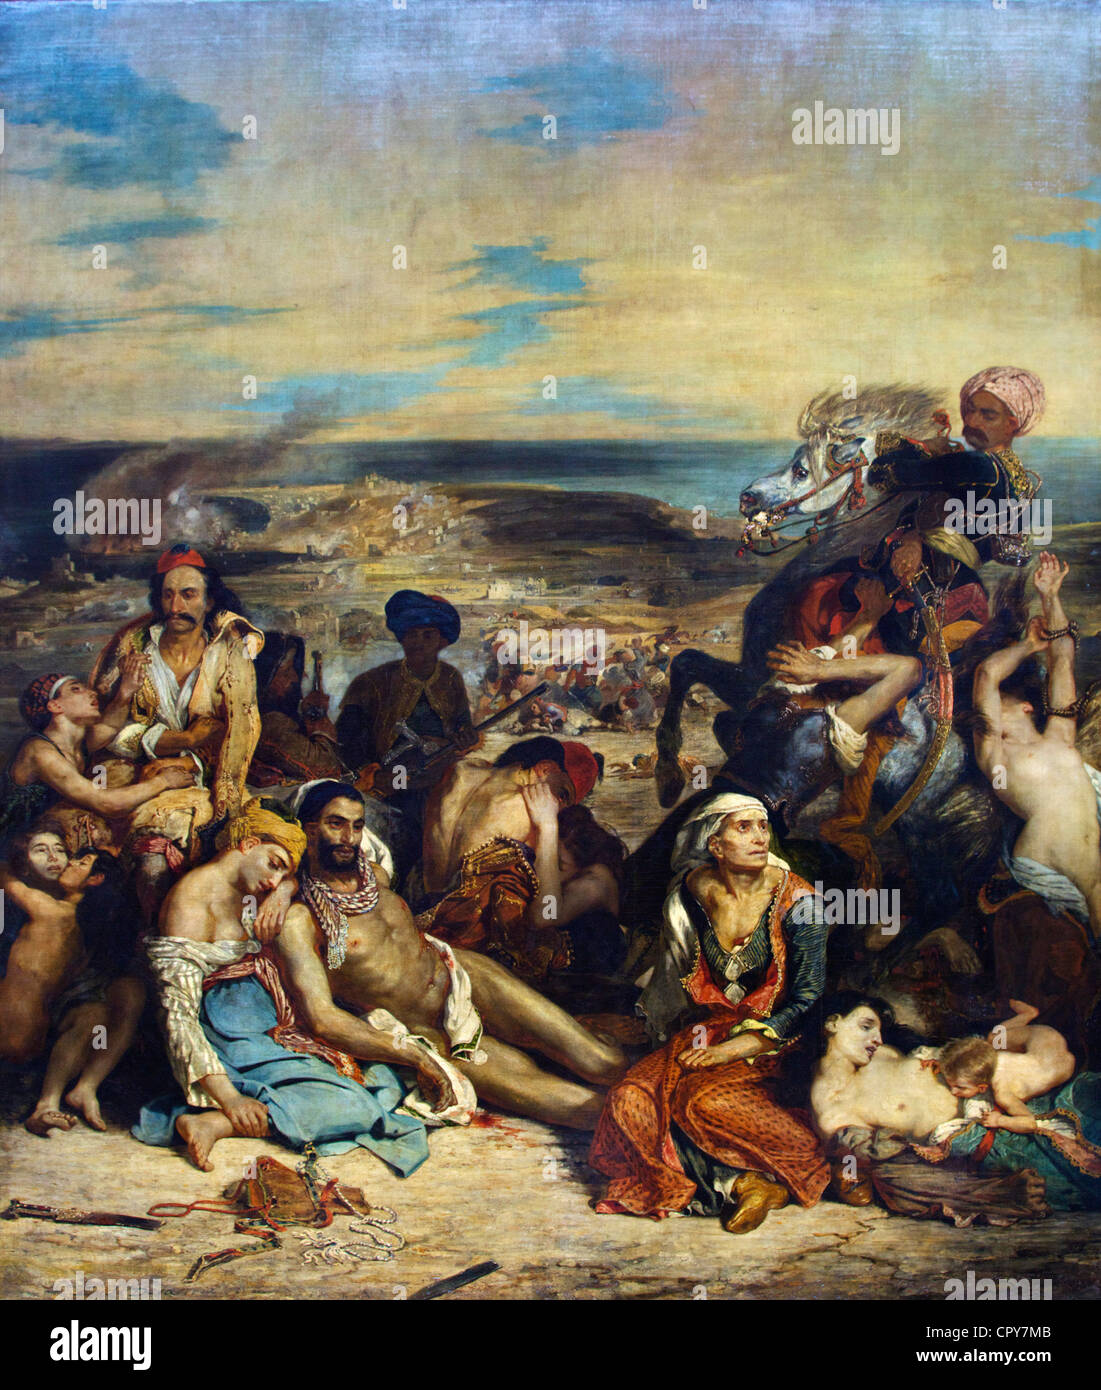 Szene der Massaker von Scio, griechische Familien kümmern sich um die Verwundeten oder Toten, Eugene Delacroix 1824 Musée du Louvre Paris Frankreich Stockfoto